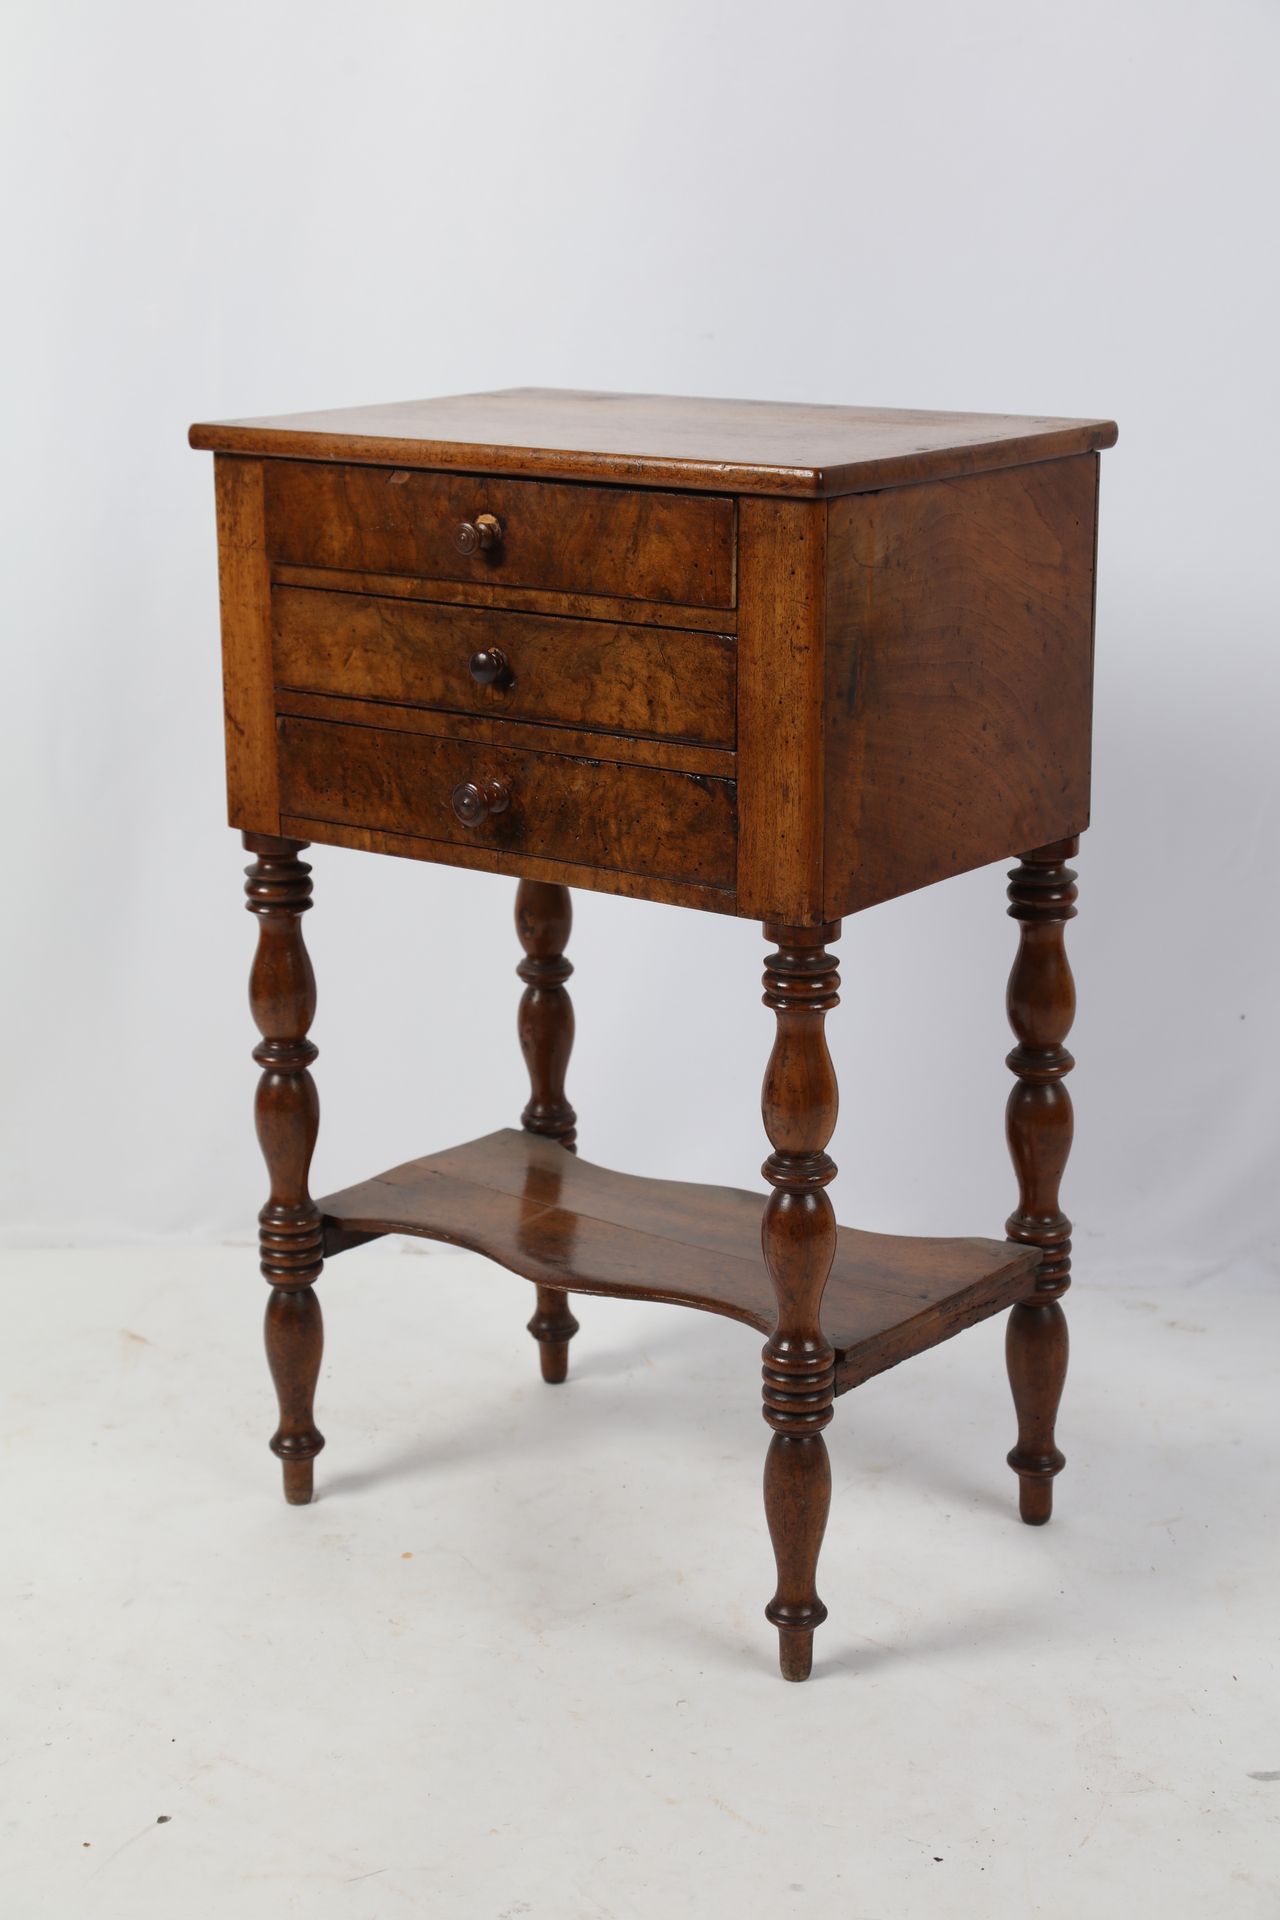 Null 胡桃木饰面的中桌，三个抽屉，环形腿，顶部。路易-菲利普时期。